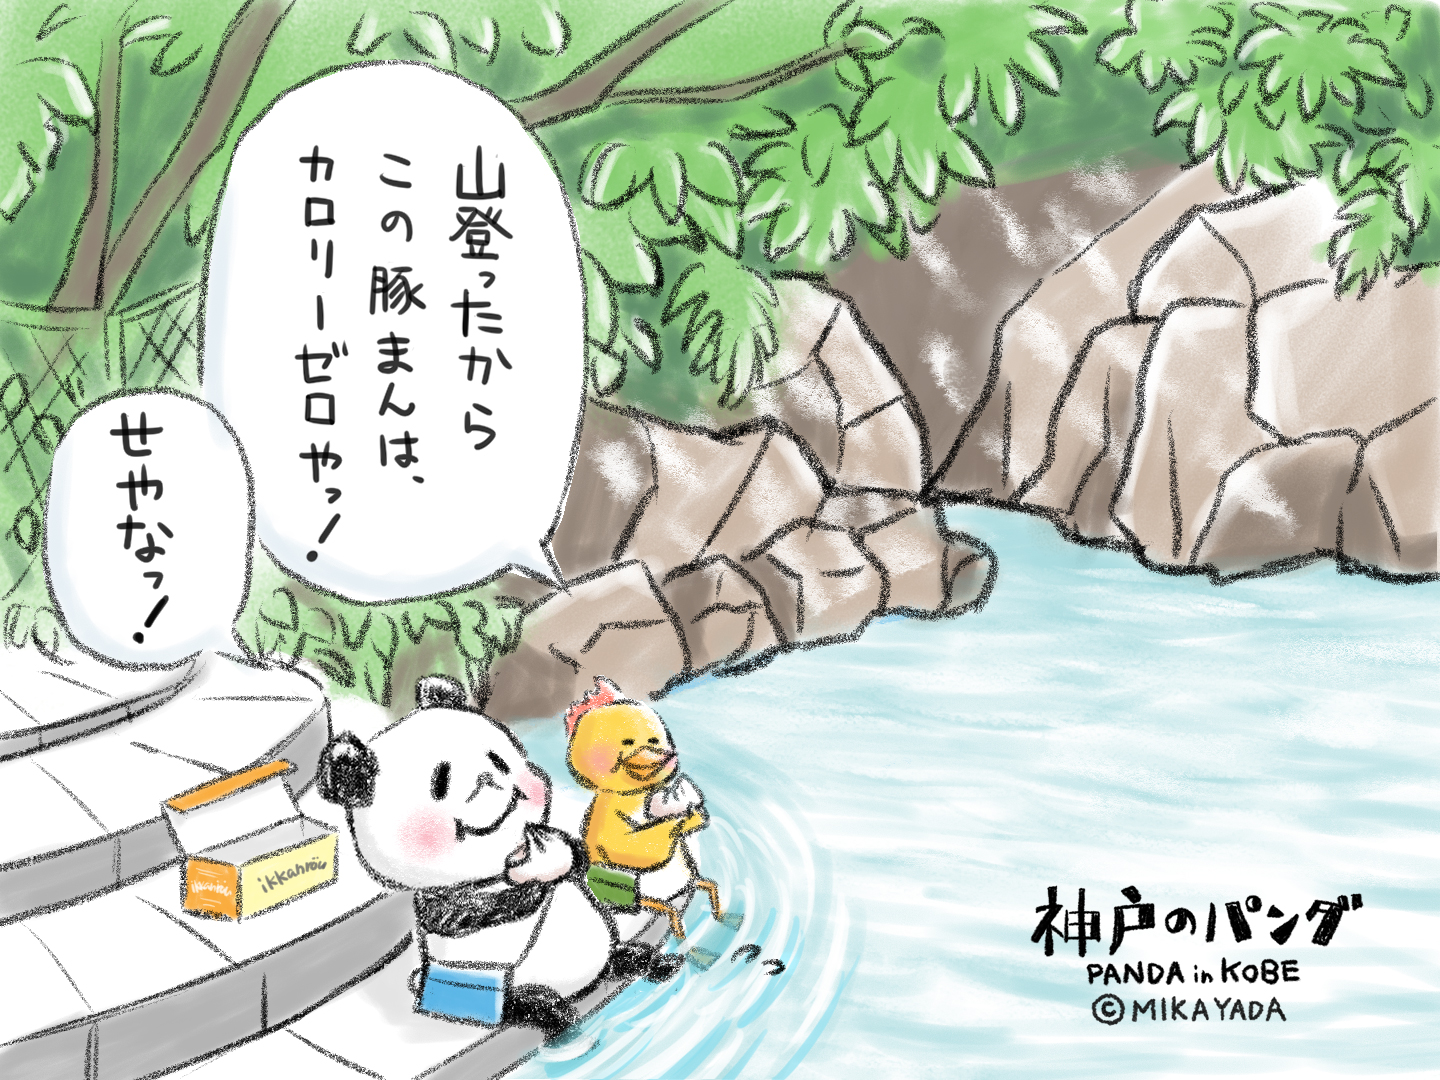 神戸のパンだ、川で涼む